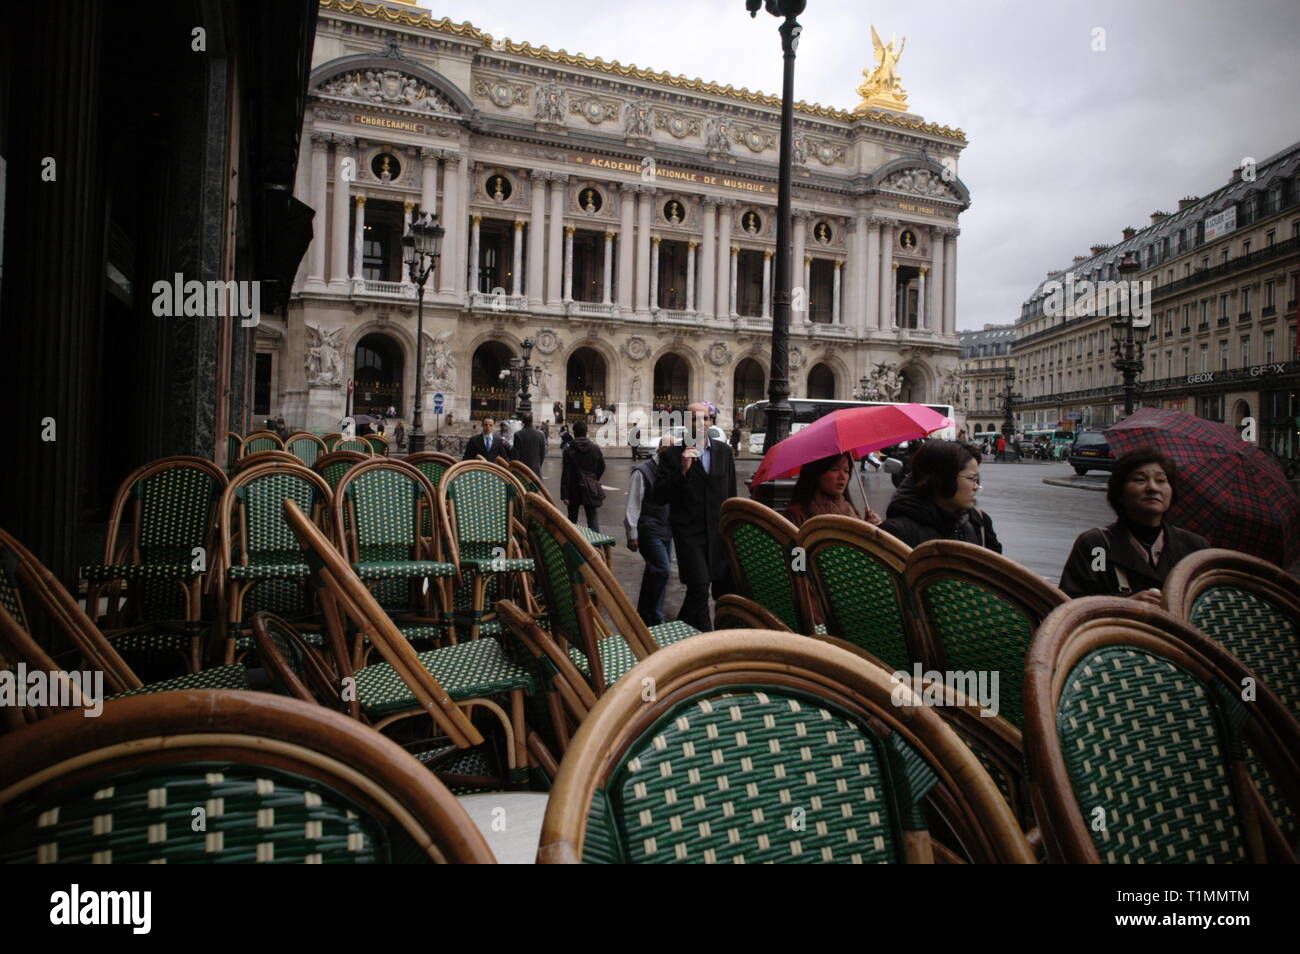 AJAXNETPHOTO. 2006. París, Francia. - L'Opera, también conocido como Palais Garnier. Foto:Jonathan EASTLAND/AJAX Ref: R63003 190 Foto de stock